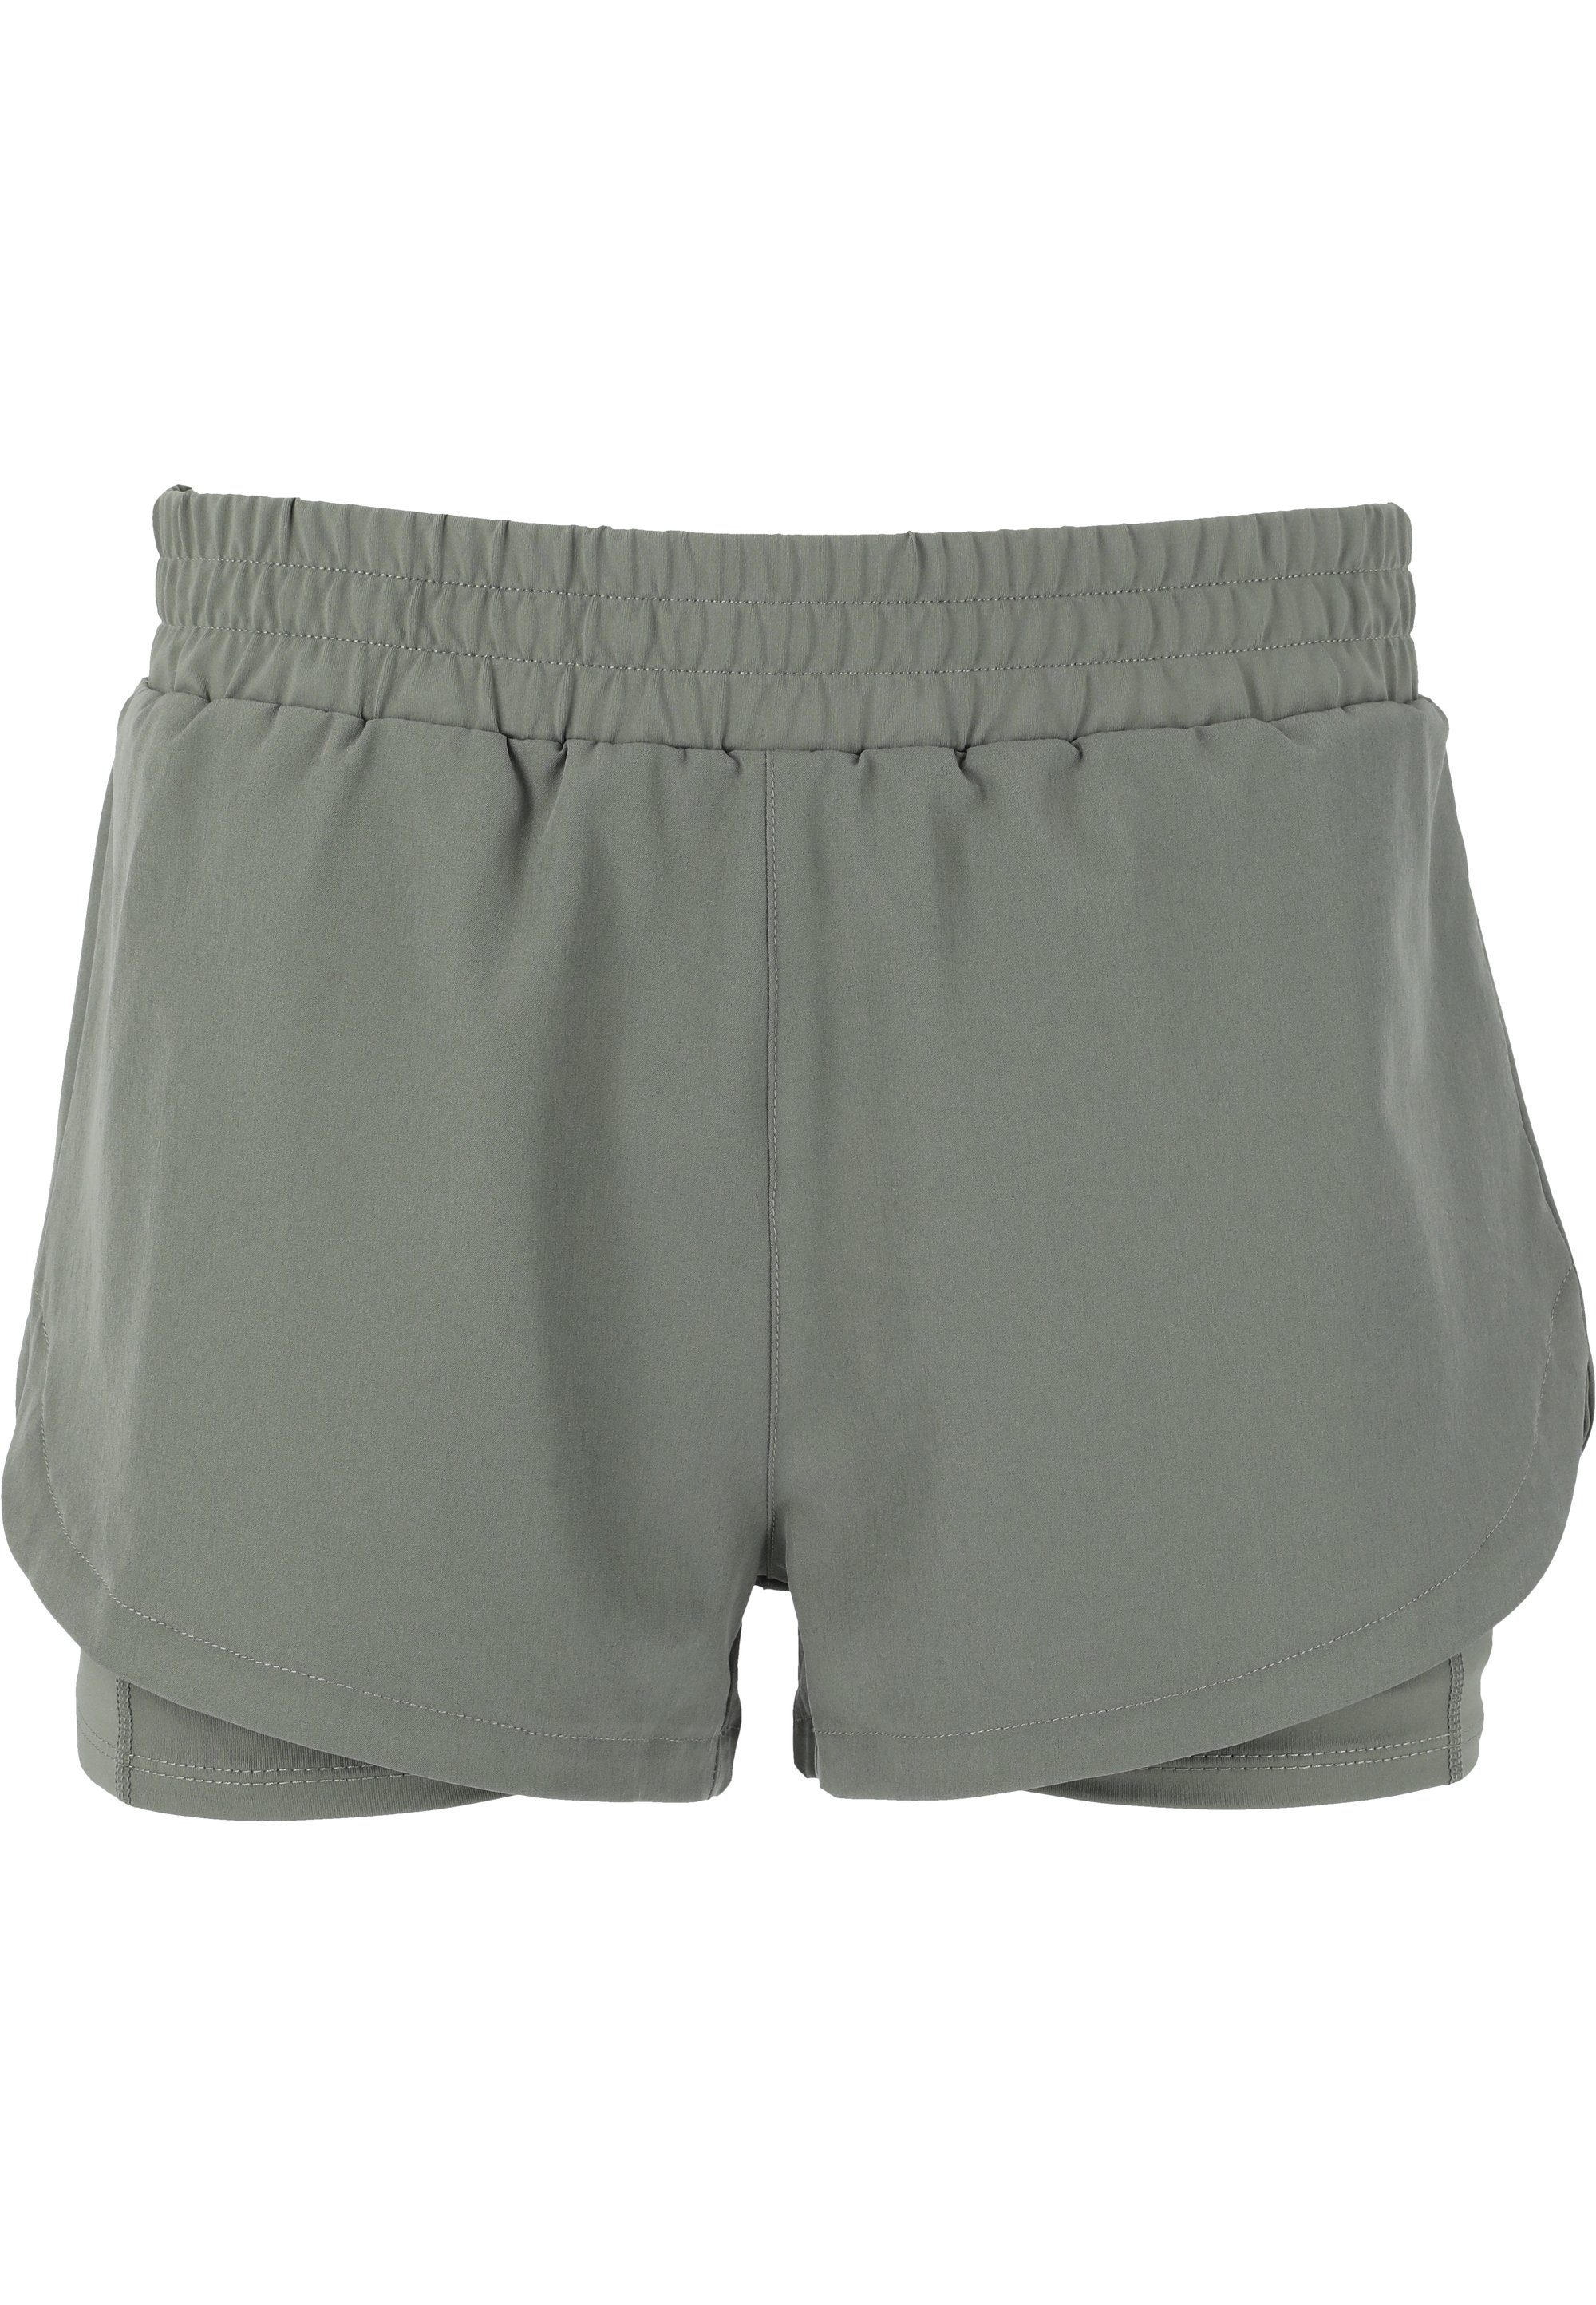 Yarol ENDURANCE grün Shorts praktischer mit 2-in-1-Funktion